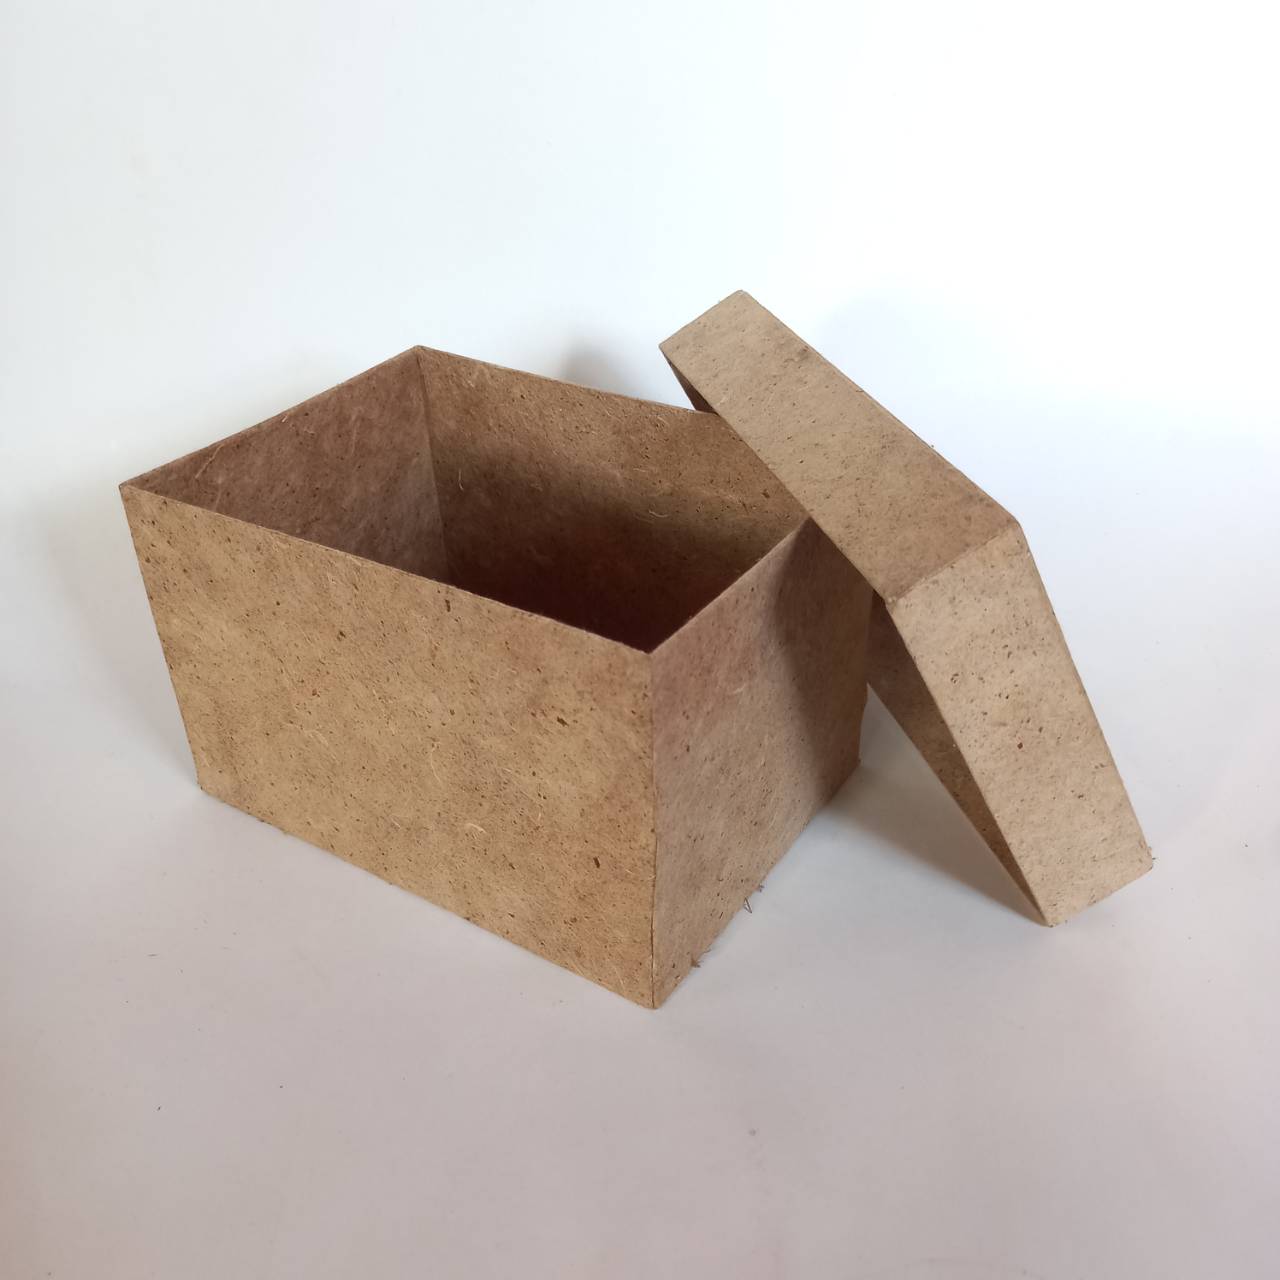 Mulberry paper box with coffee ground กล่องกระดาษสากากกาแฟ